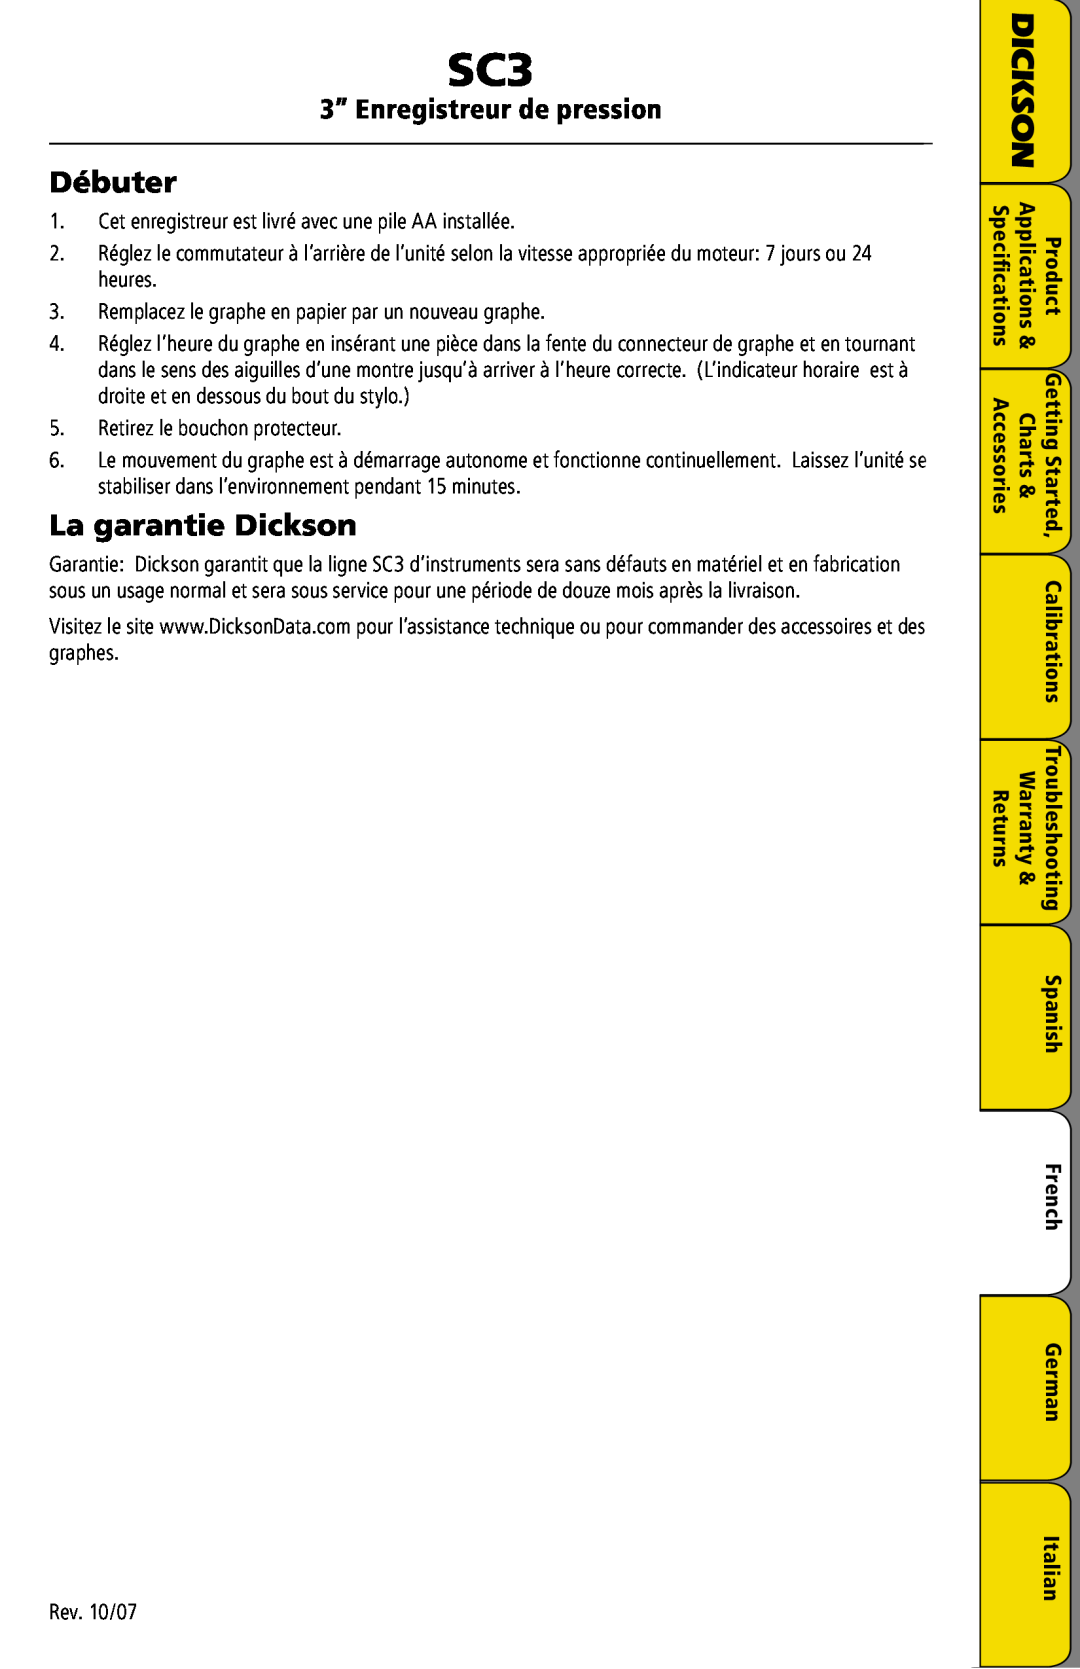 Dickson Industrial SC3 manual Débuter, La garantie Dickson, 3” Enregistreur de pression 